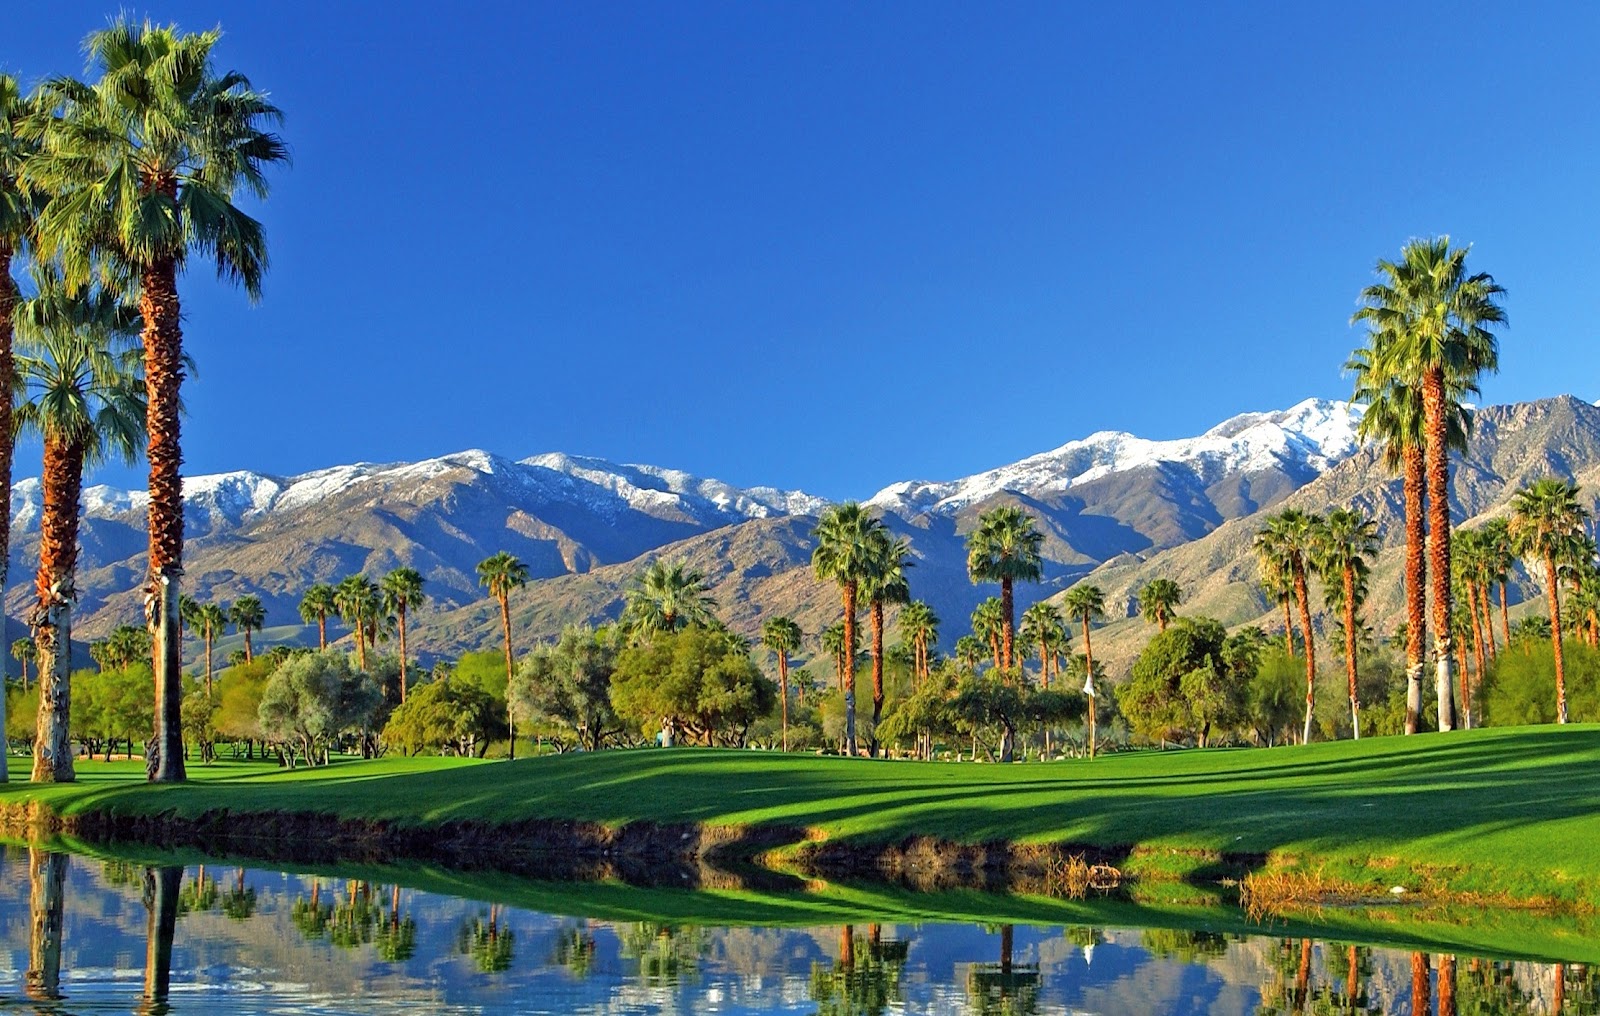 palm springs wallpaper,natural landscape,sport venue,nature,mountain range,golf course